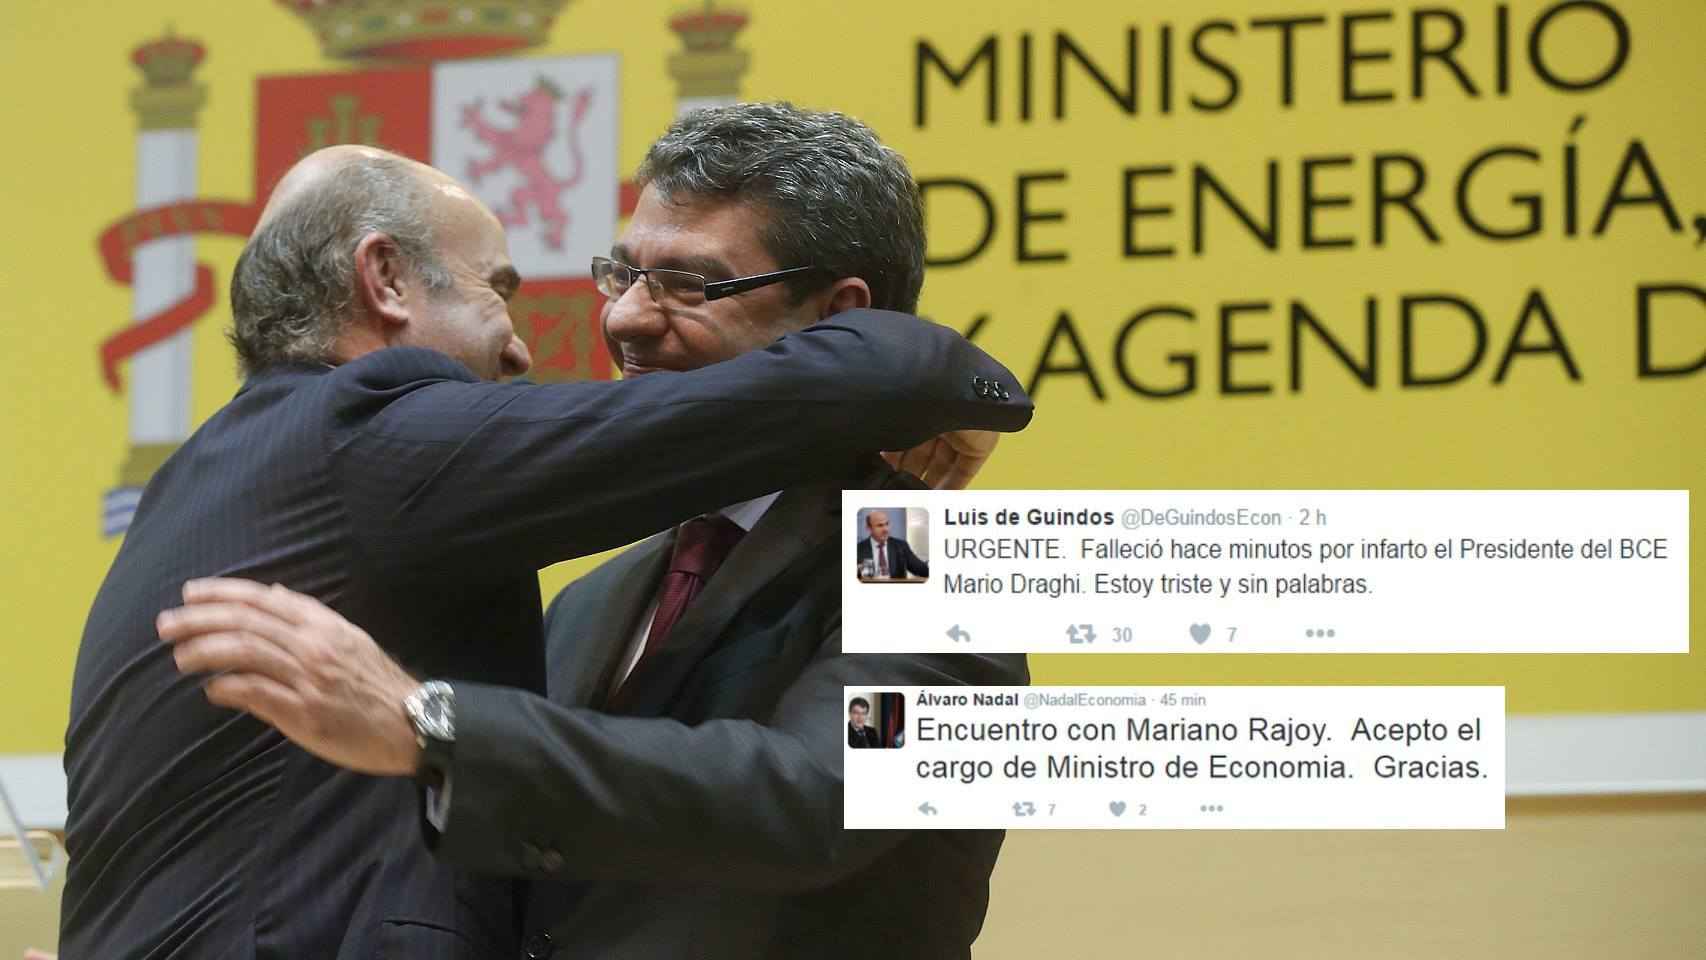 Los tuits de los falsos Luis de Guindos y Álvaro Nadal